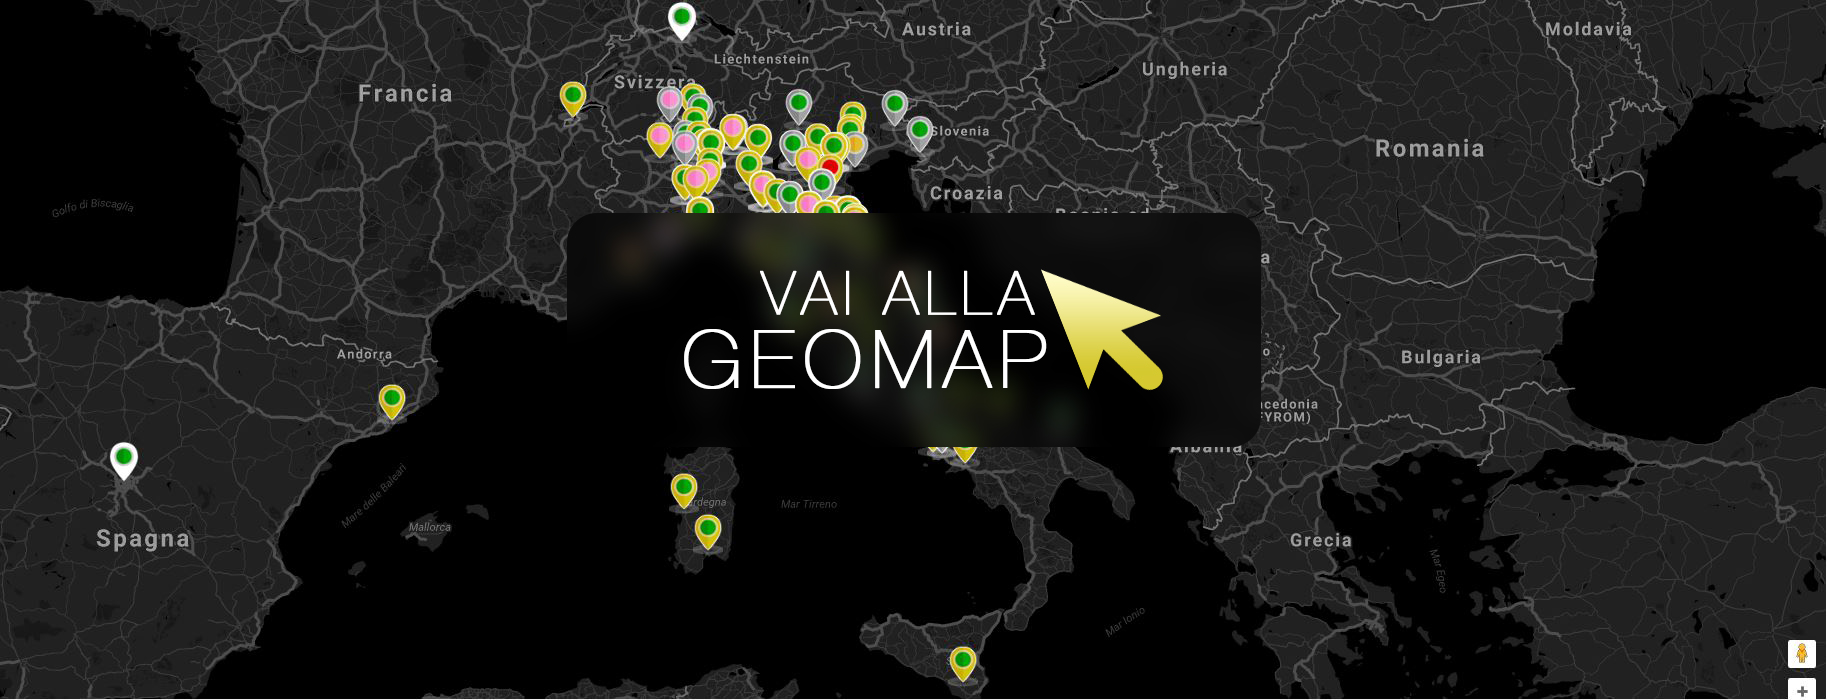 Guarda gli annunci a Genova nella mappa intervattiva